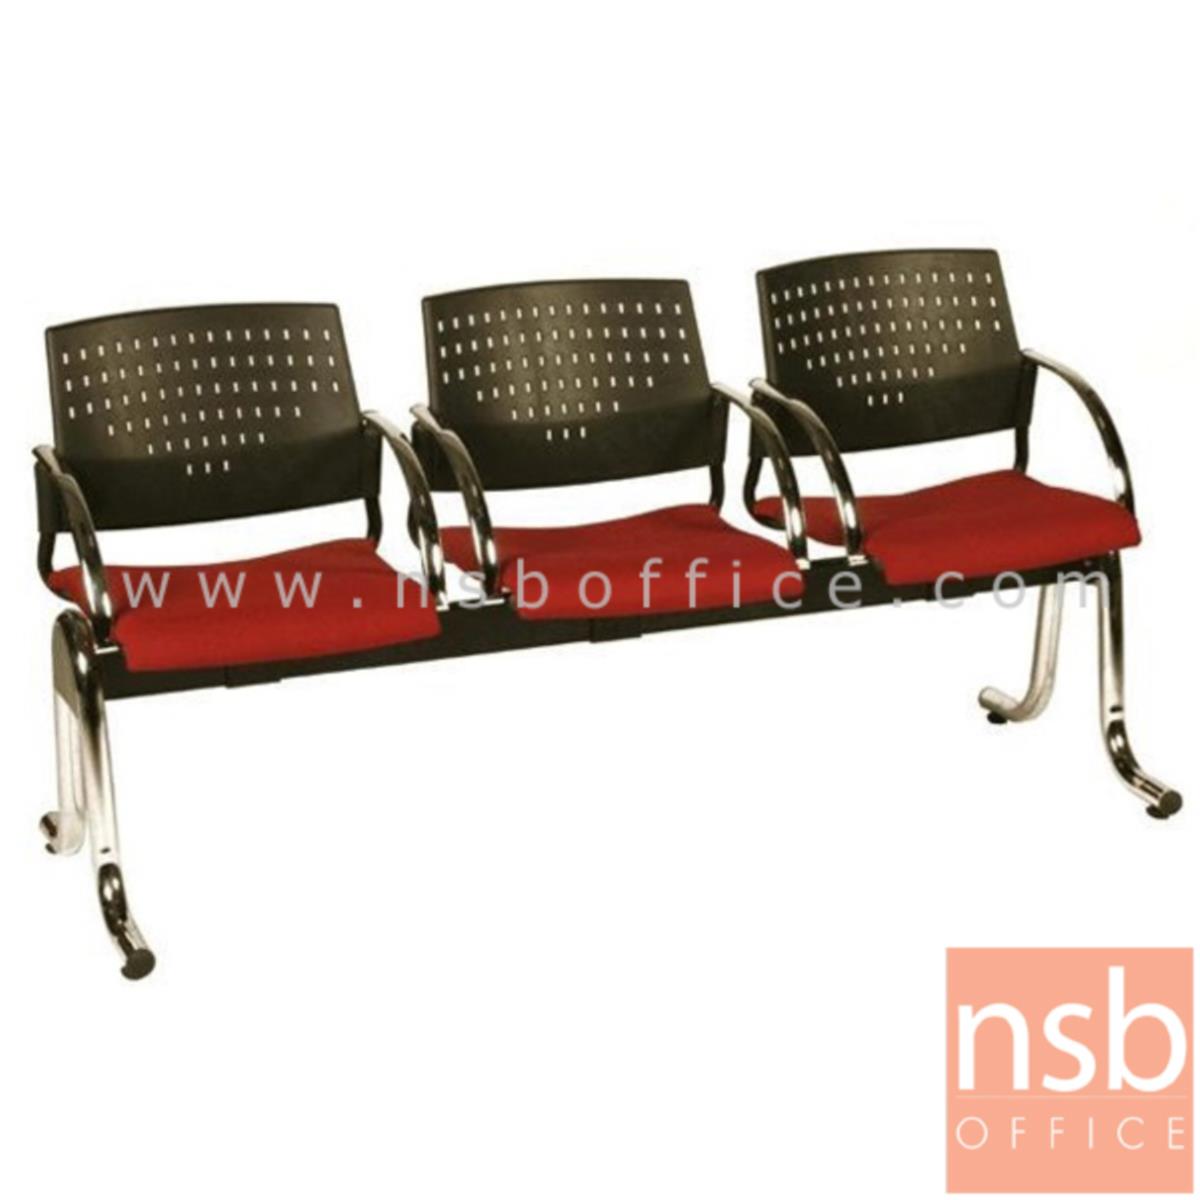 B06A048:เก้าอี้นั่งคอยเฟรมโพลี่ รุ่น B916 2 ,3 ,4 ที่นั่ง ขนาด 105W ,164W ,215W cm. ขาเหล็ก